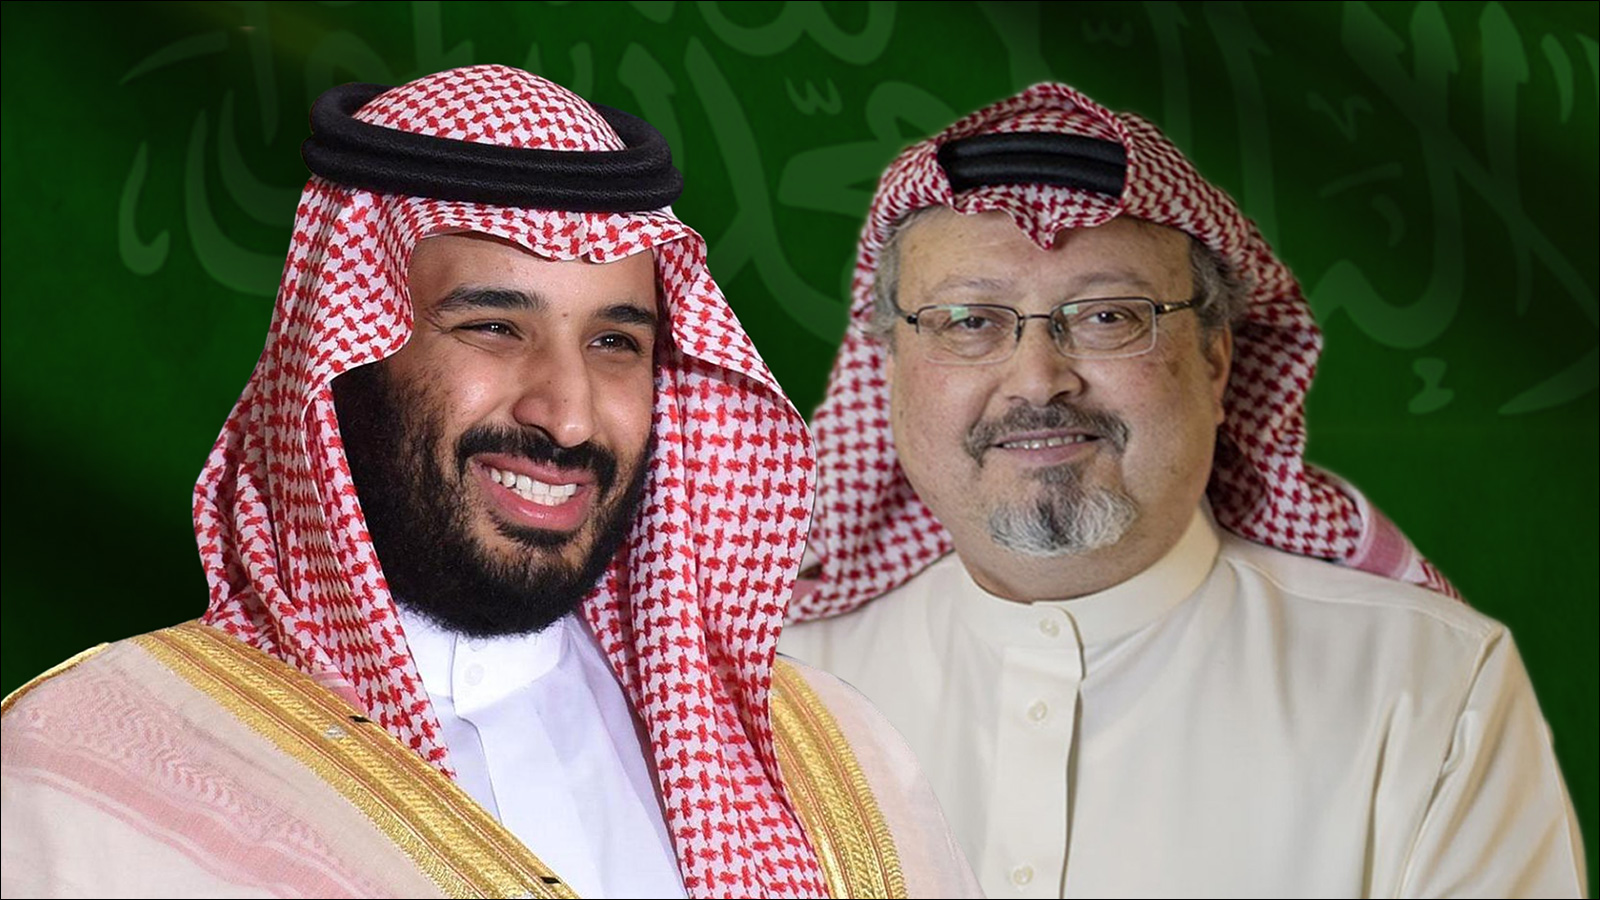 ما تقوم به السلطة السعودية في الآونة الأخيرة ليس مع جمال خاشقجي فقط بل مع الكثير من العلماء والدعاة والصحفيين والحقوقيين وغيرهم ما هي إلا محاولة لإسكات وقمع الرأي العام في السعودية